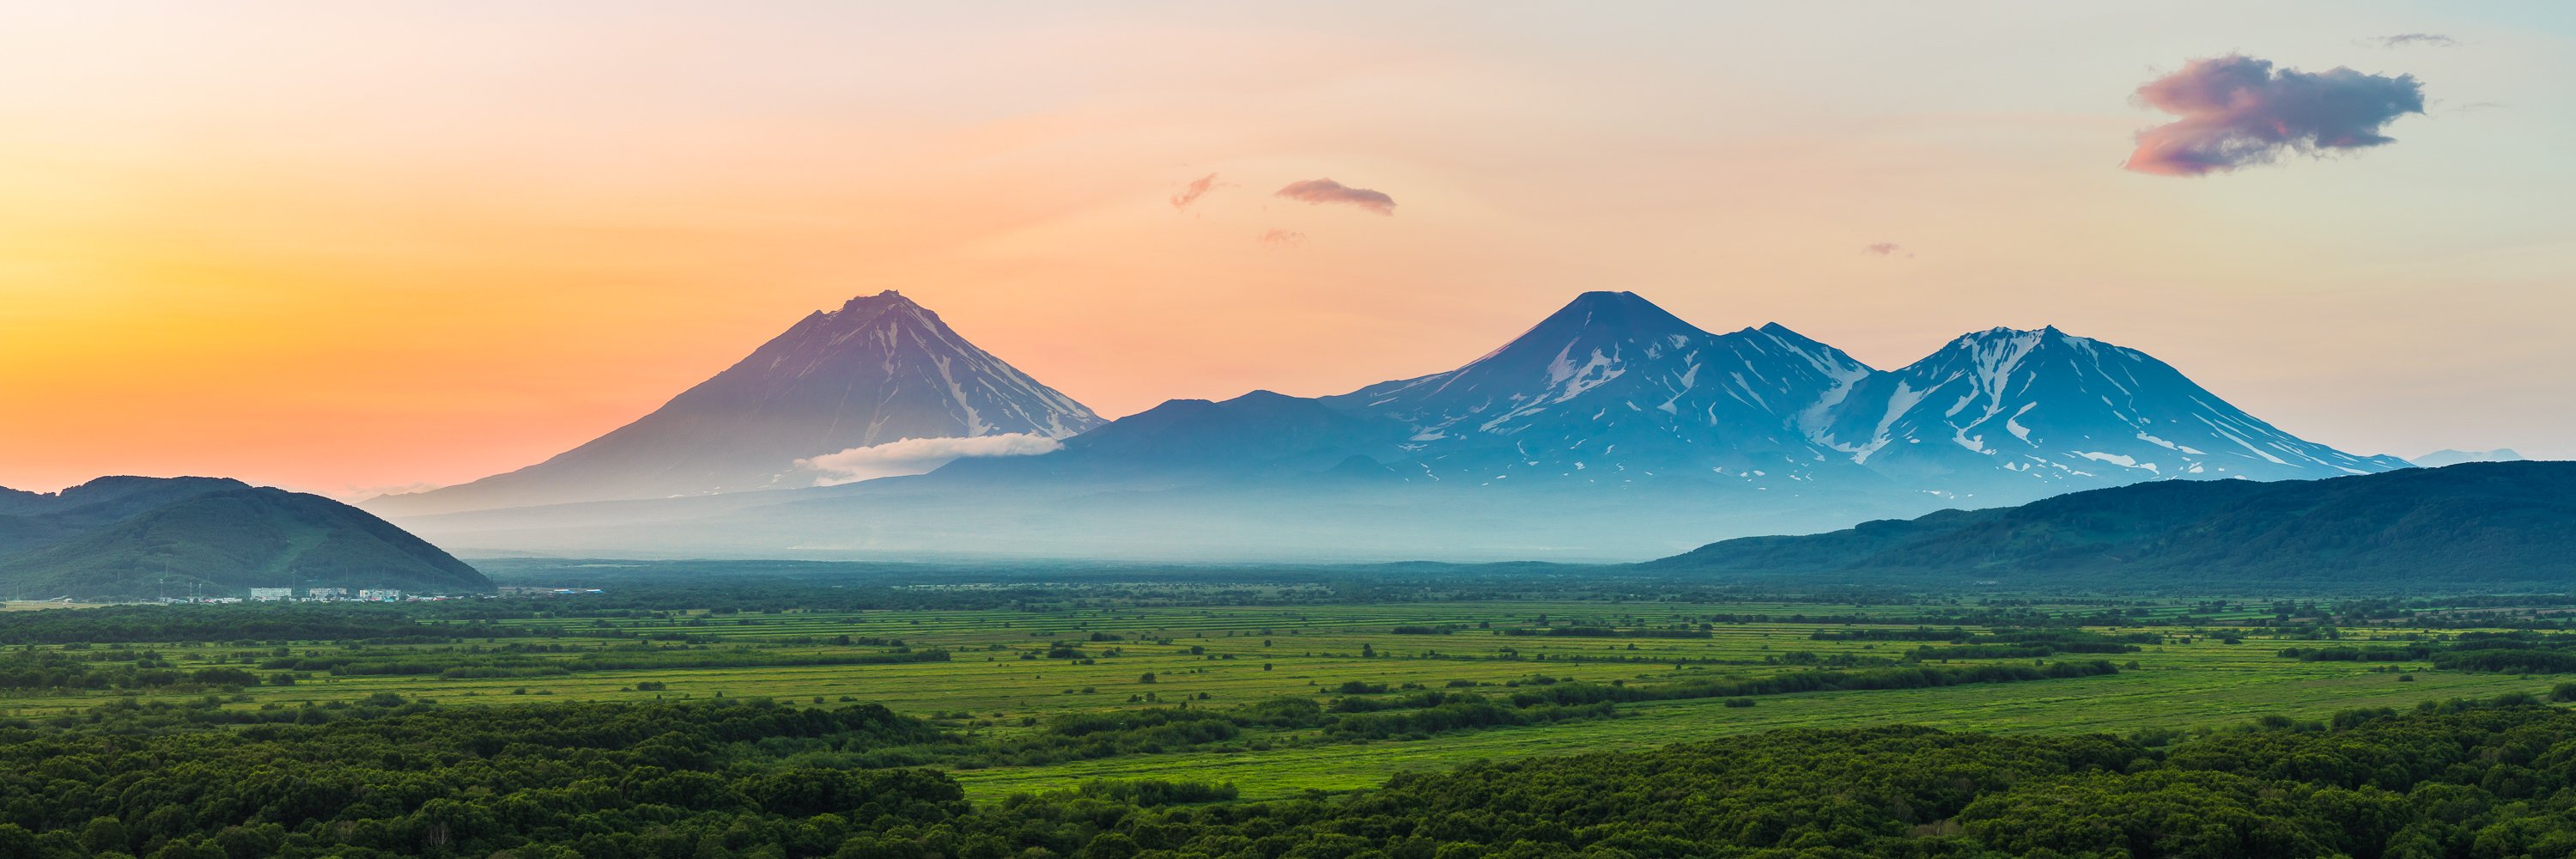 камчатка, вулкан, закат, пейзаж, горы, Дмитрий Емельяненко